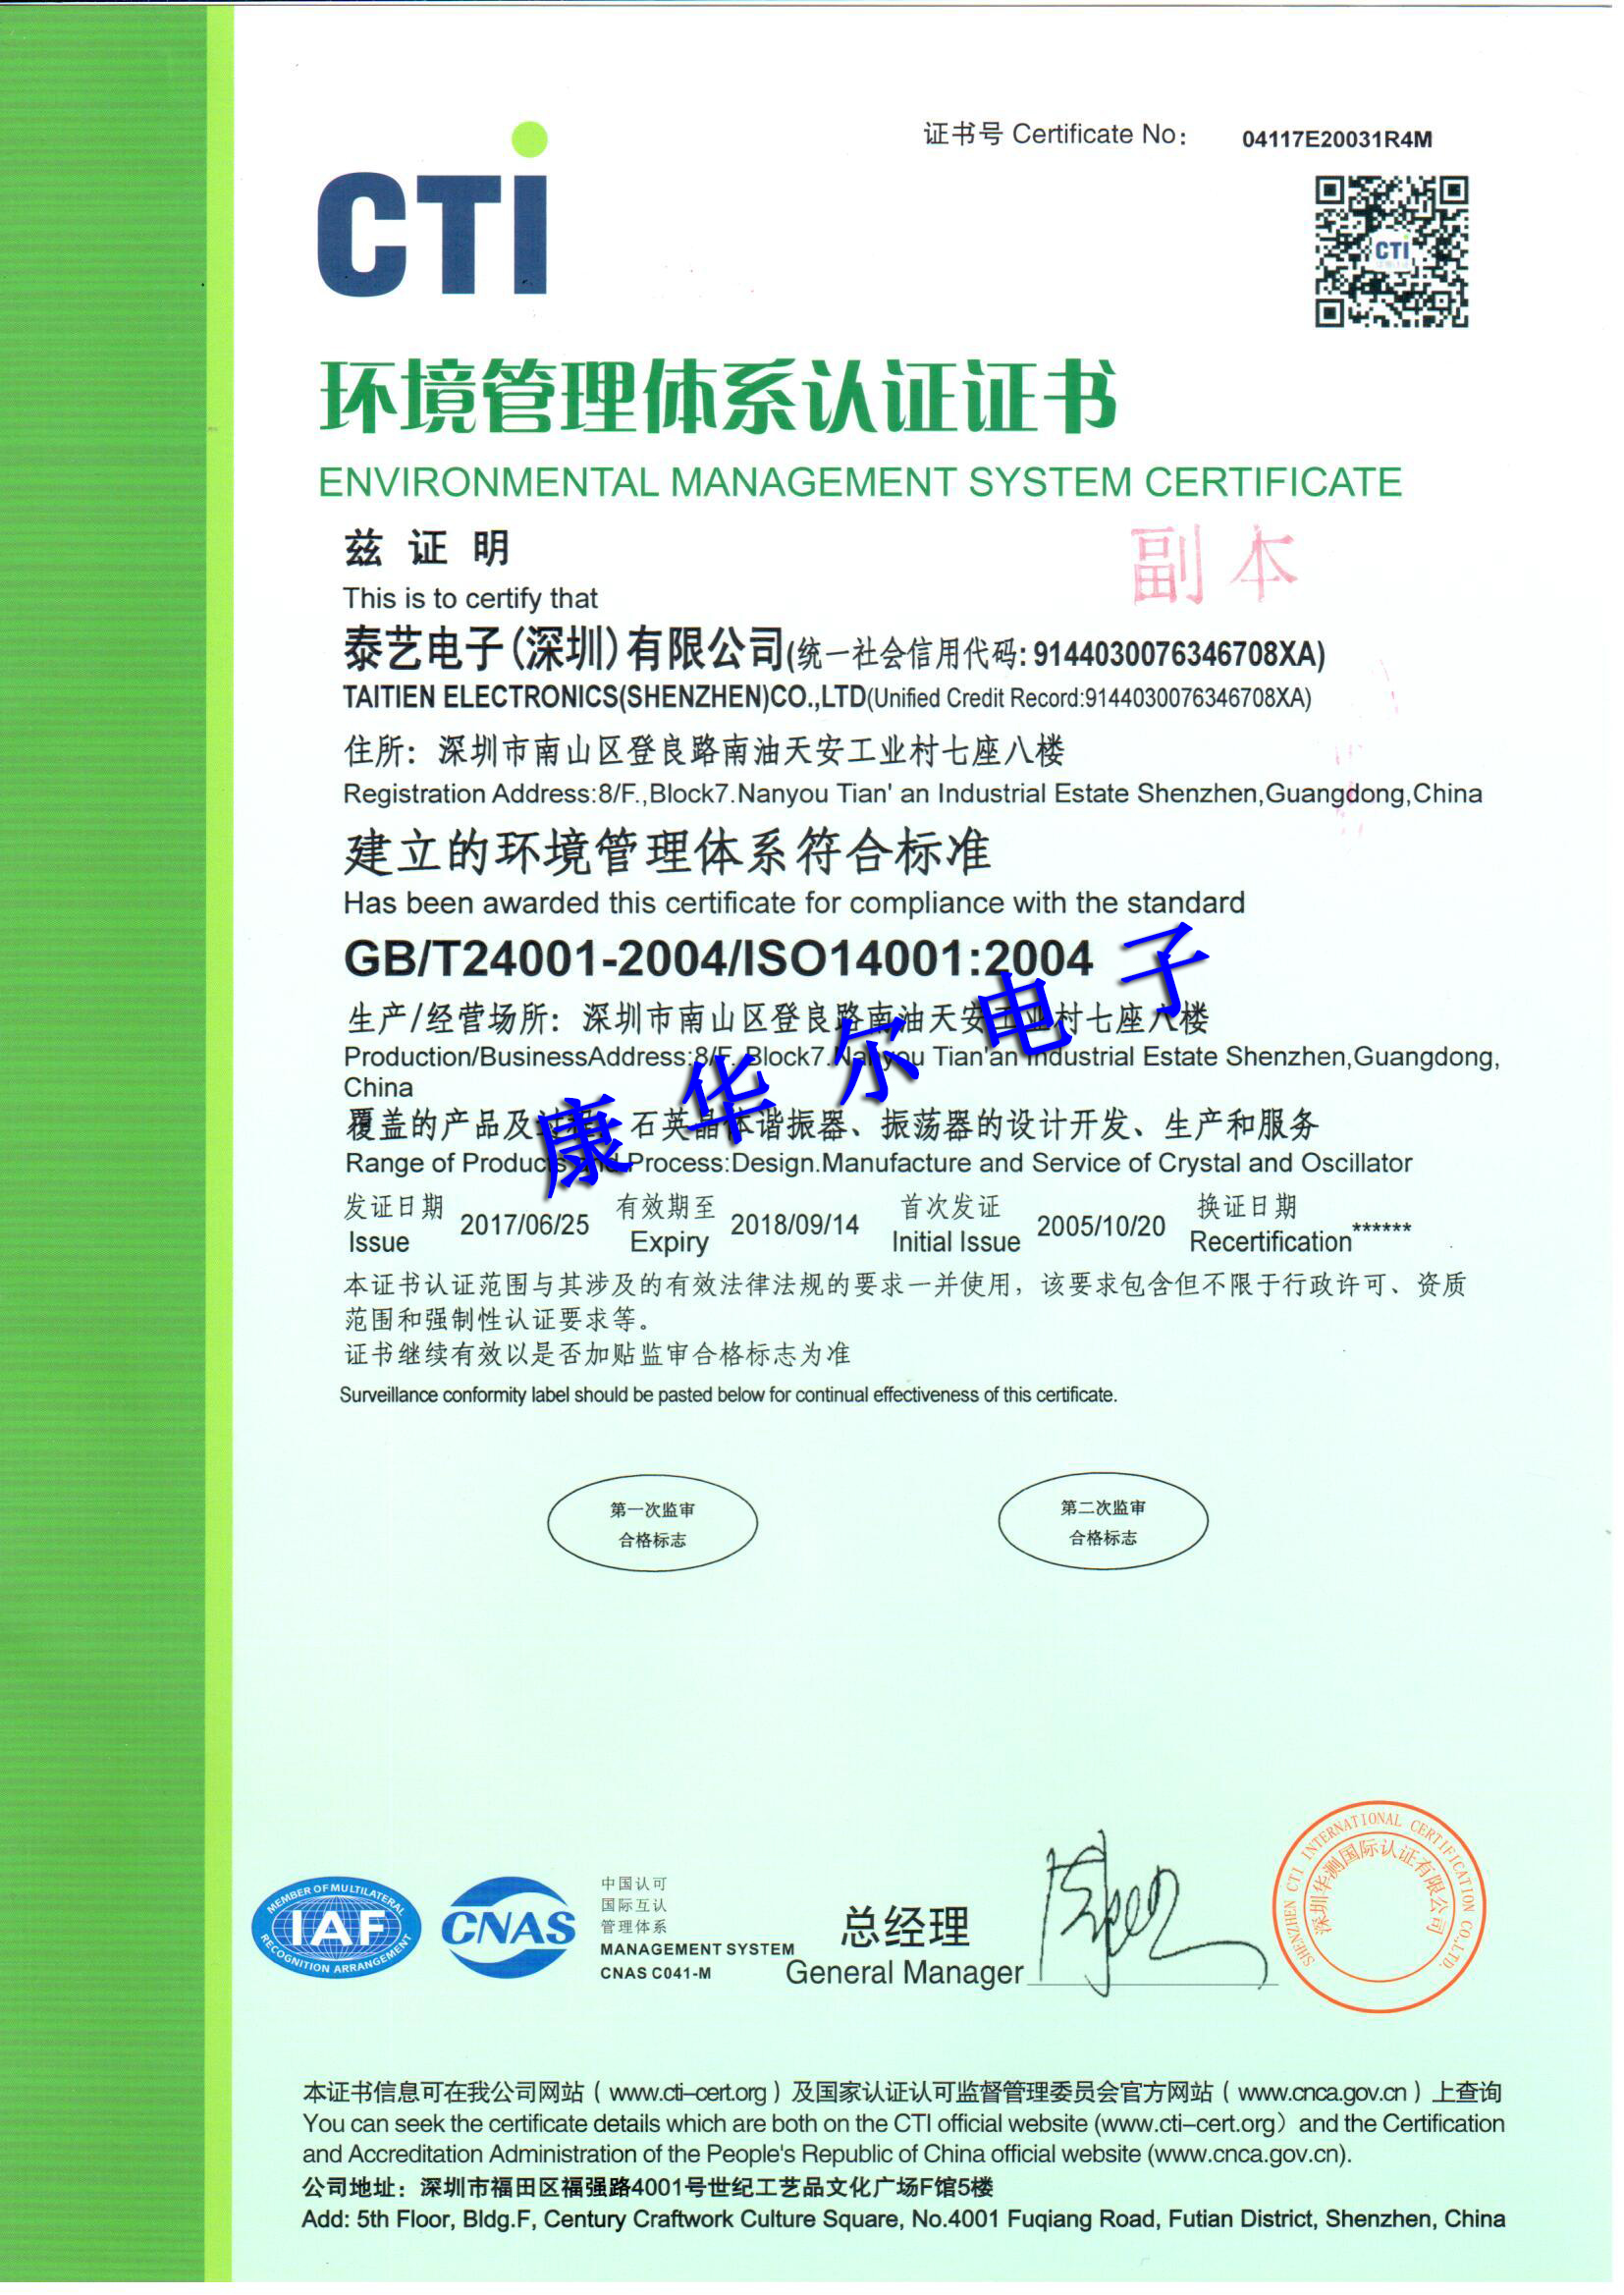 深圳泰艺晶振环境管理体系认证证书